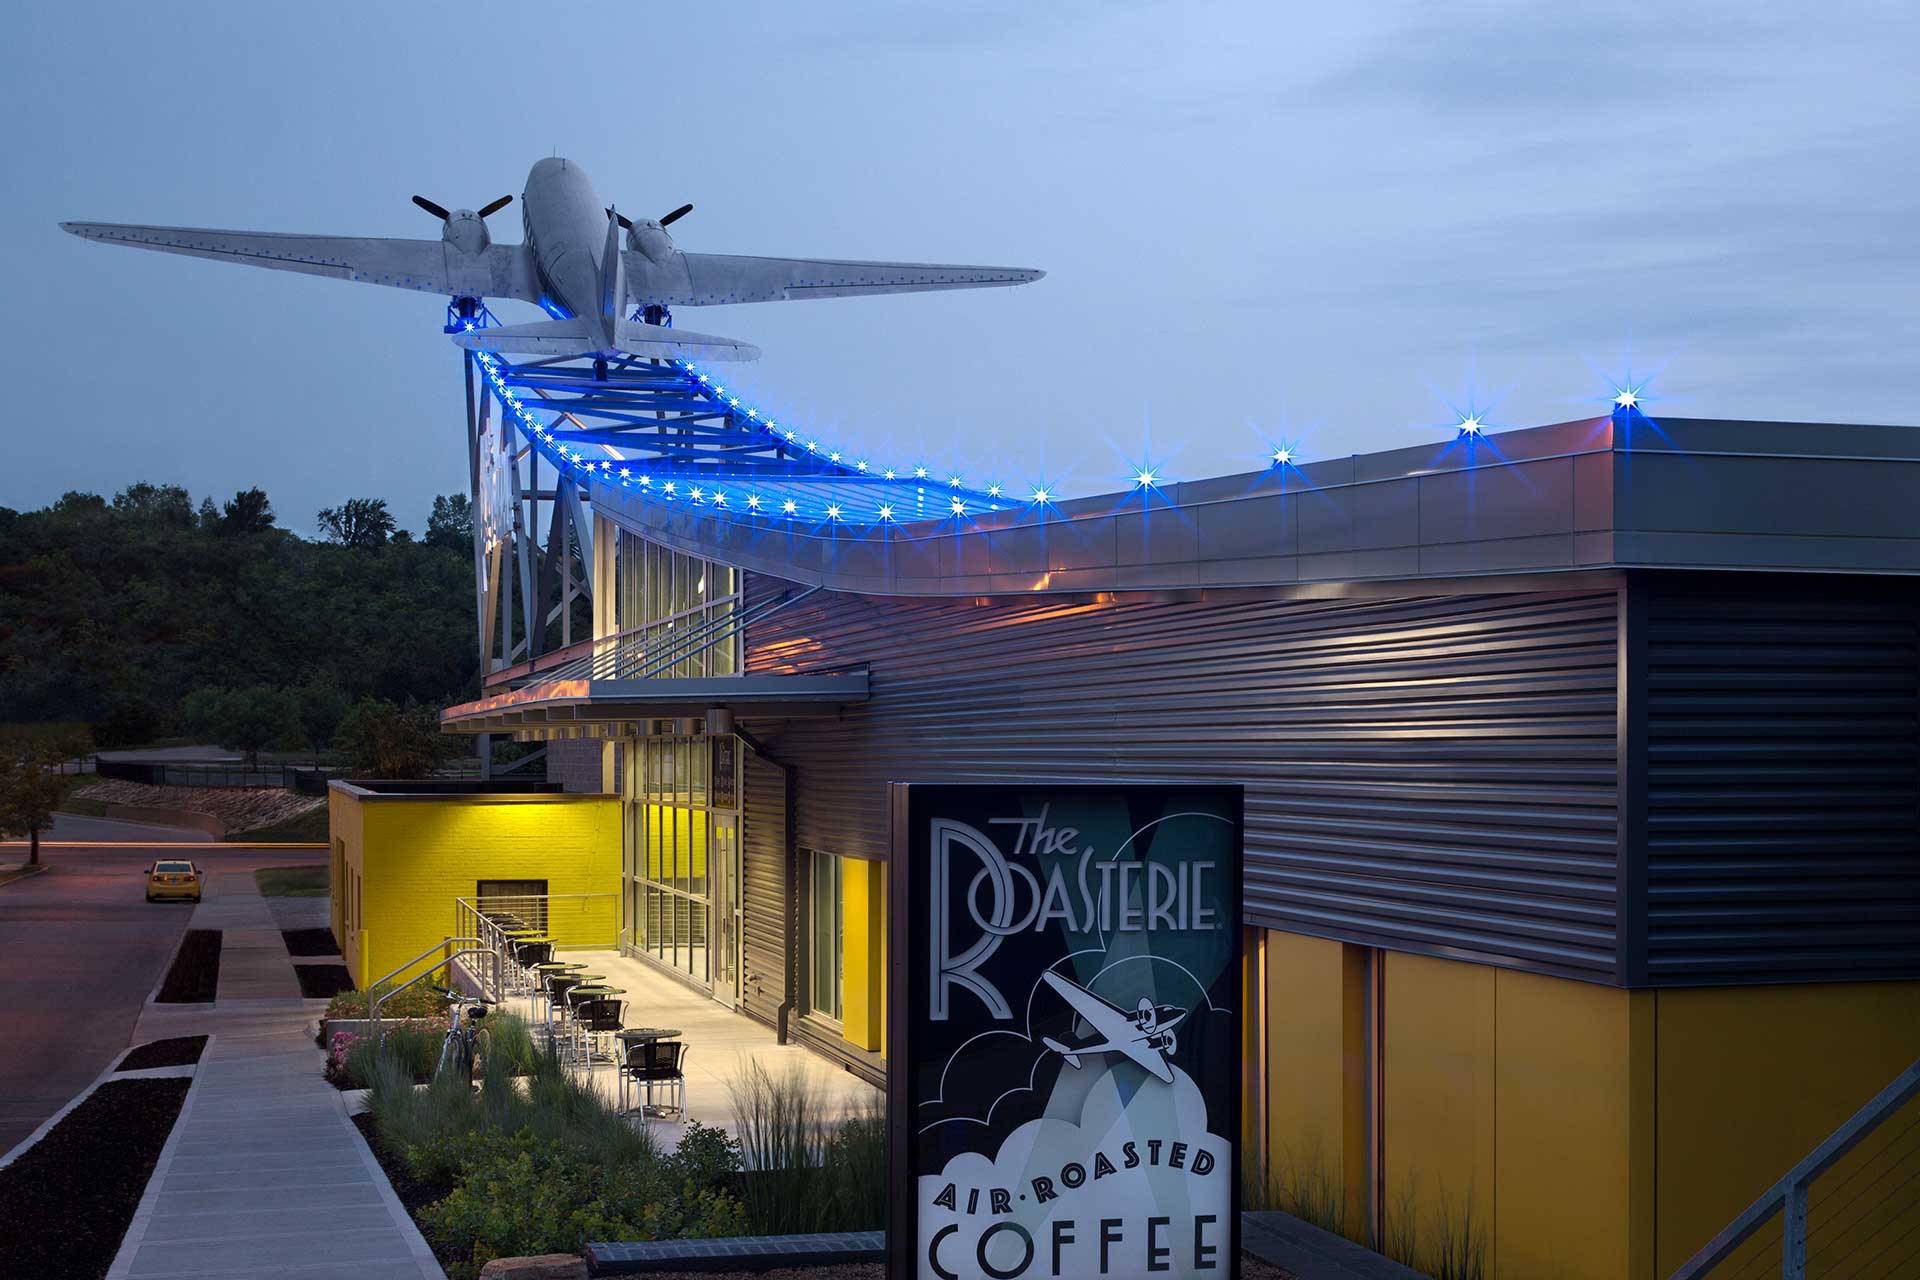 쌍둥이 프로펠러가 달린 비행기로 지붕을 디자인한 Roasterie 캔자스시티 공장